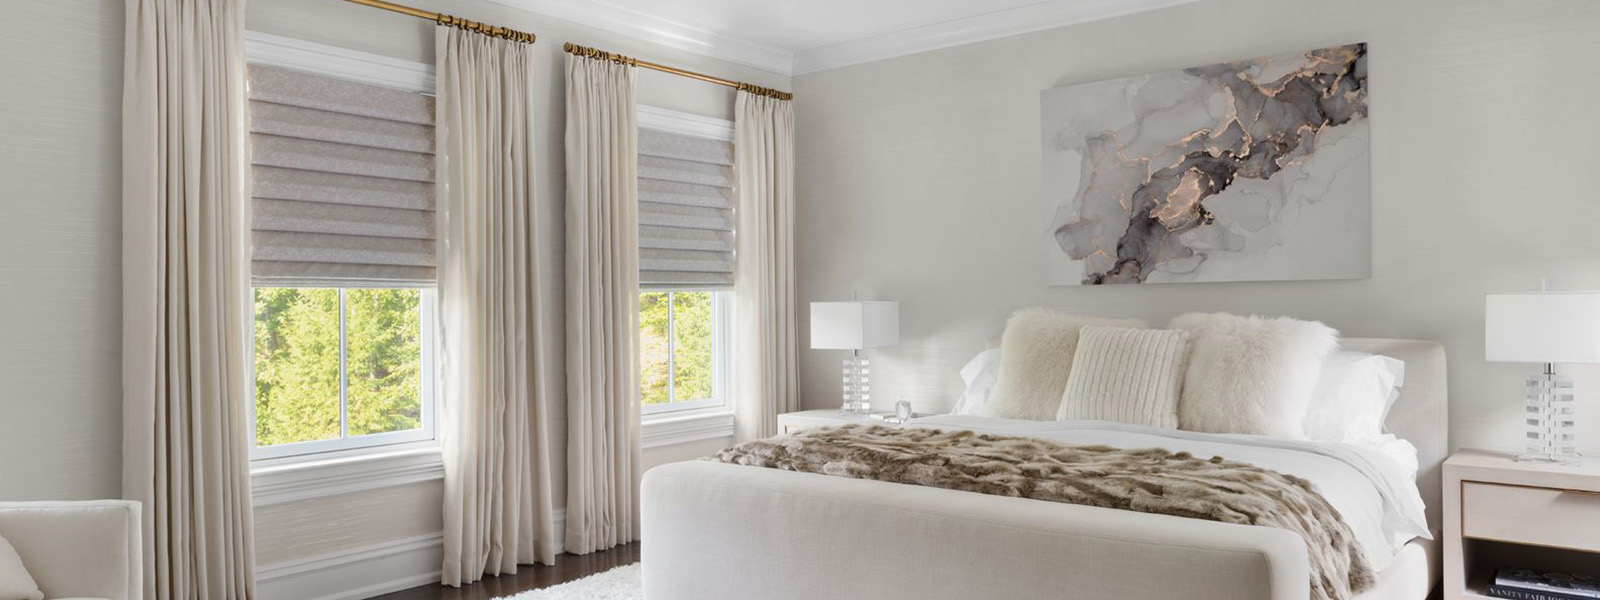 Drapes paired with roman shades on a double window in a modern bedroom. Des rideaux agencés à des stores romains décorent une double fenêtre dans une